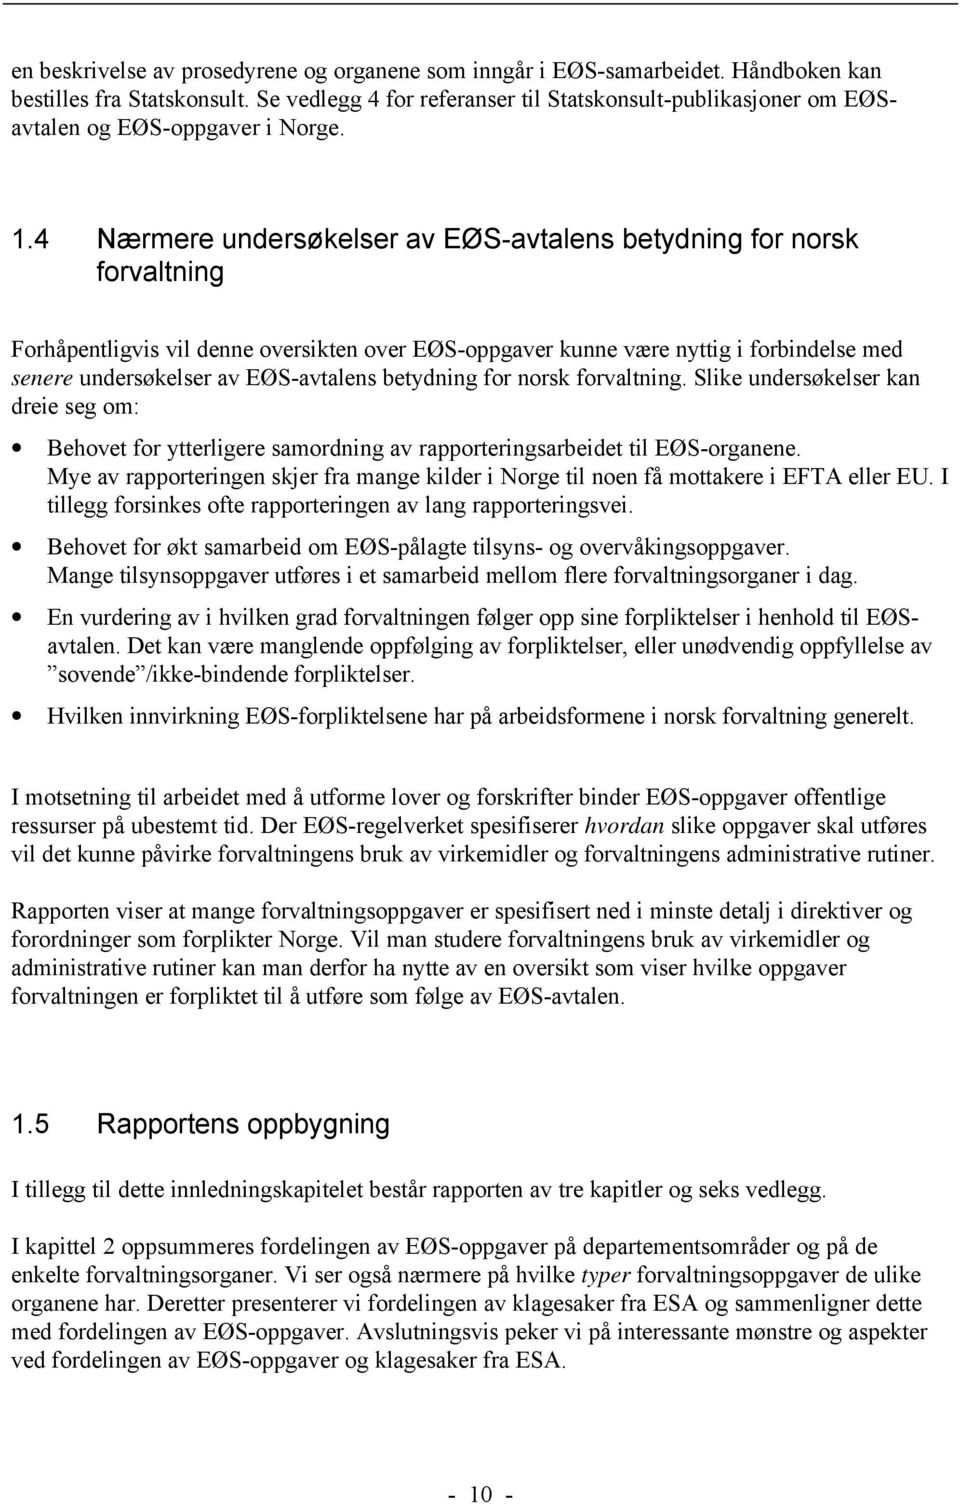 4 Nærmere undersøkelser av EØS-avtalens betydning for norsk forvaltning Forhåpentligvis vil denne oversikten over EØS-oppgaver kunne være nyttig i forbindelse med senere undersøkelser av EØS-avtalens